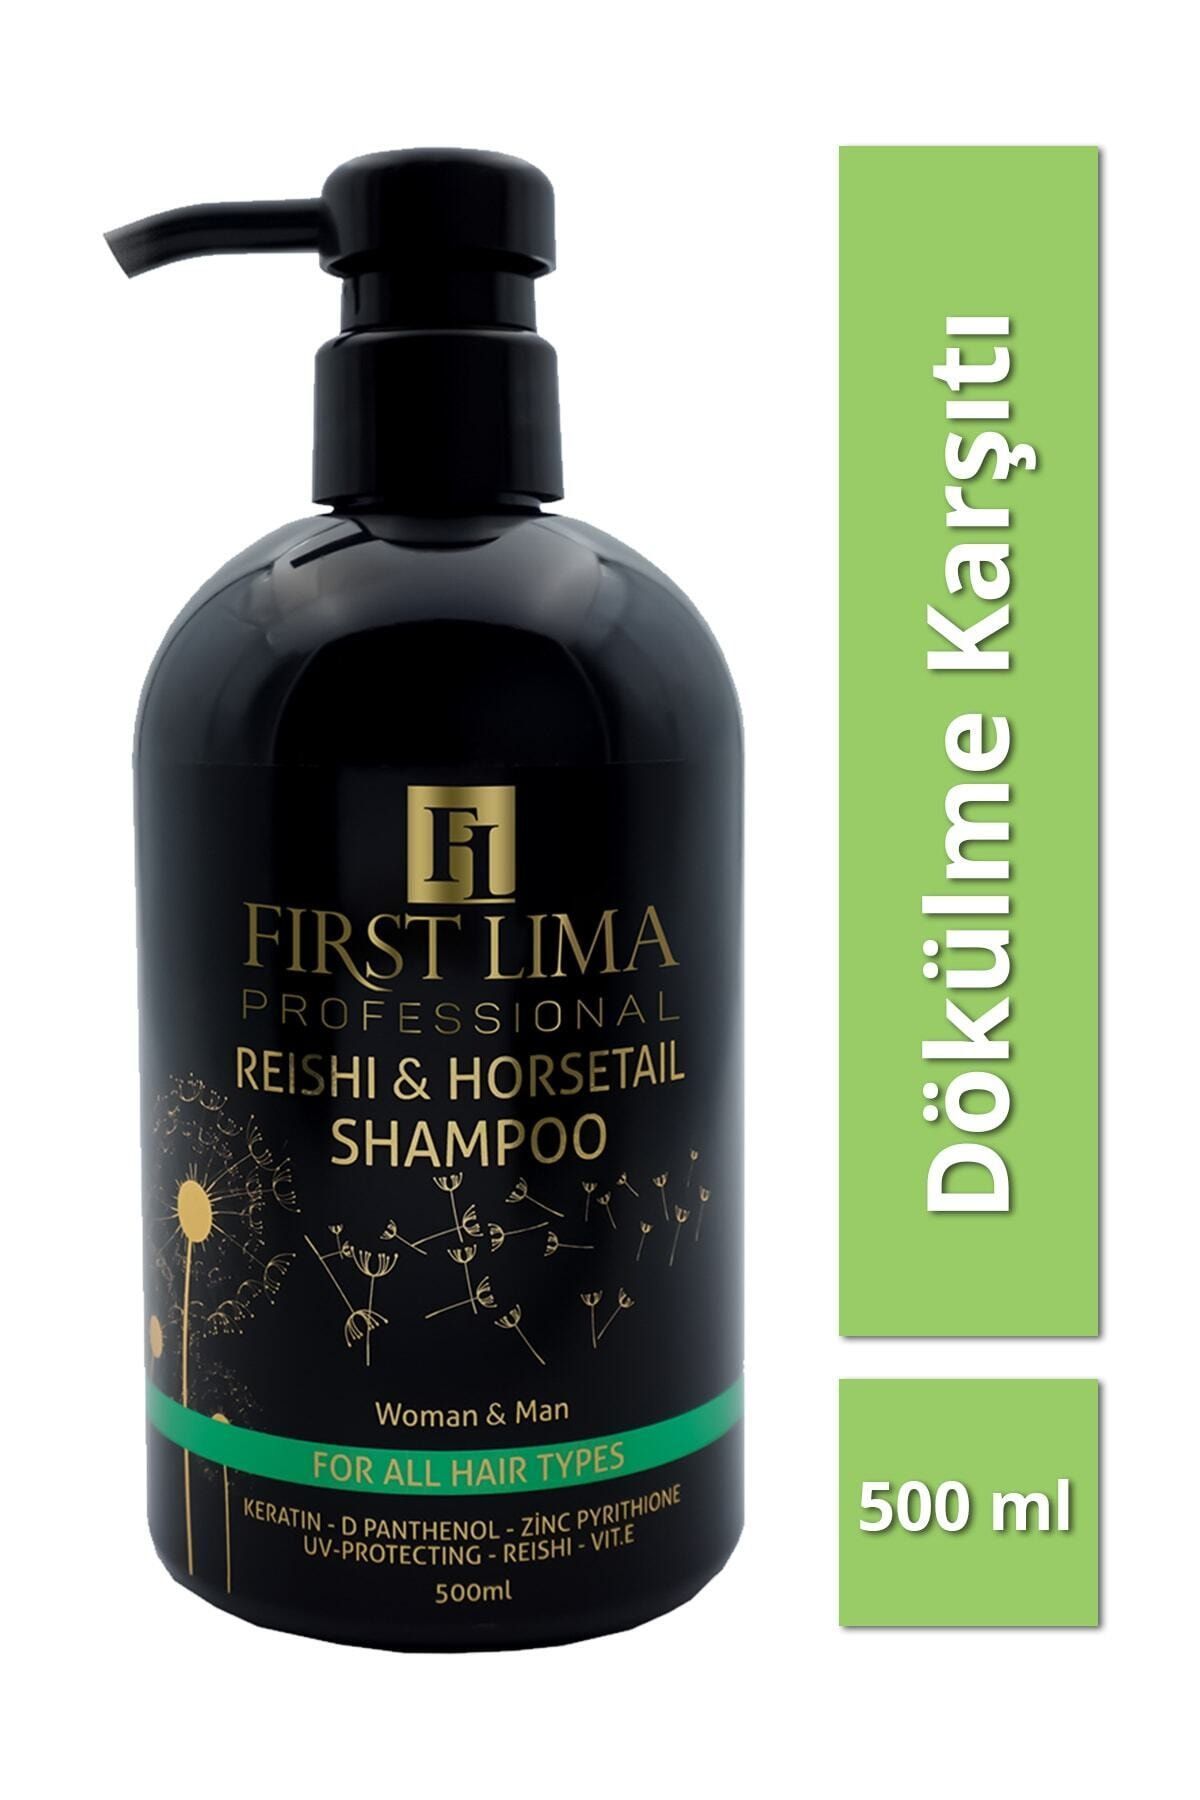 First Lima Professional Dökülme Karşıtı Ve Uzama Destekli Reishi & Horsetail Şampuan